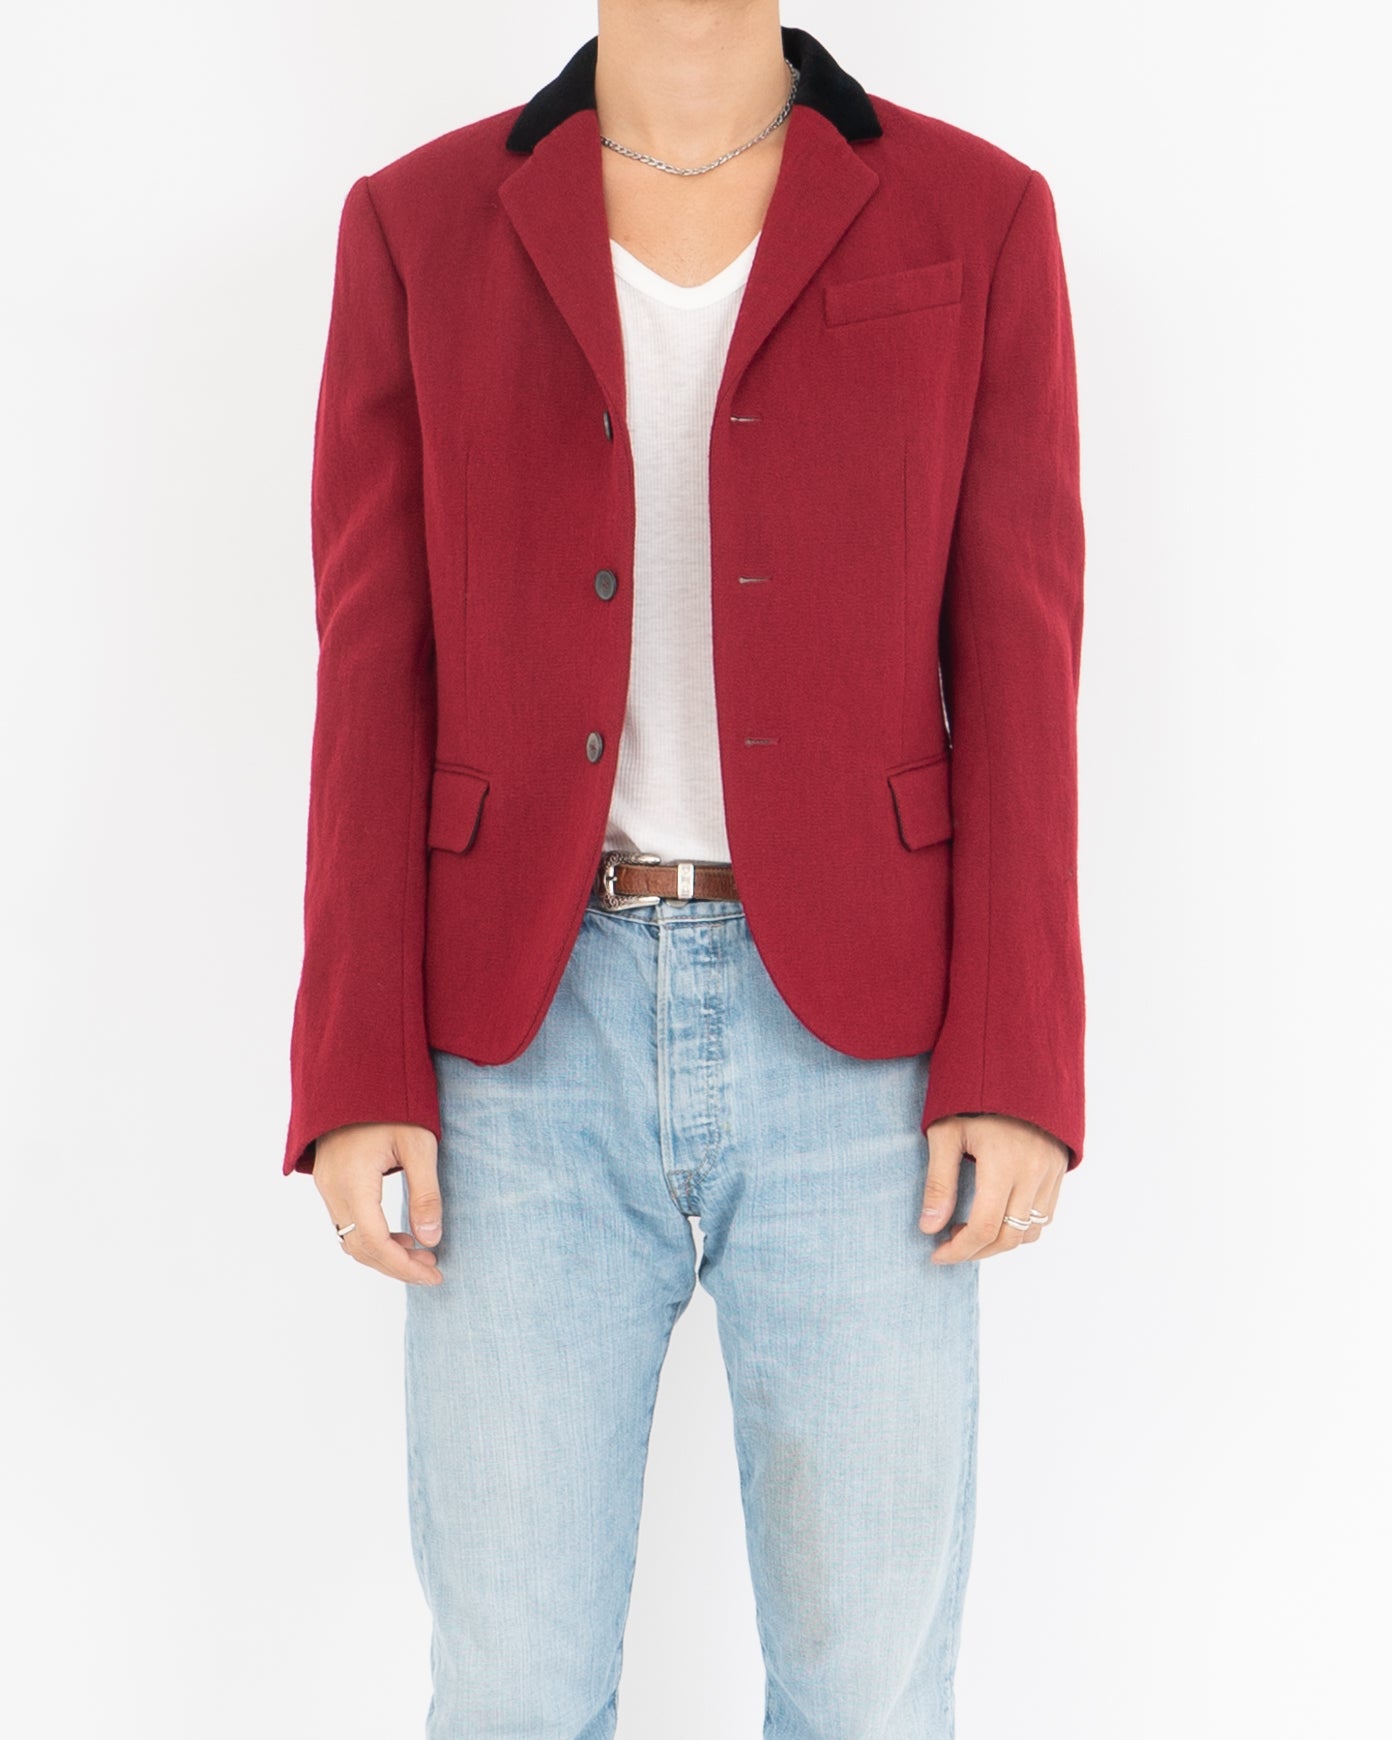 FW17 Red Velvet Collar Sample Blazer